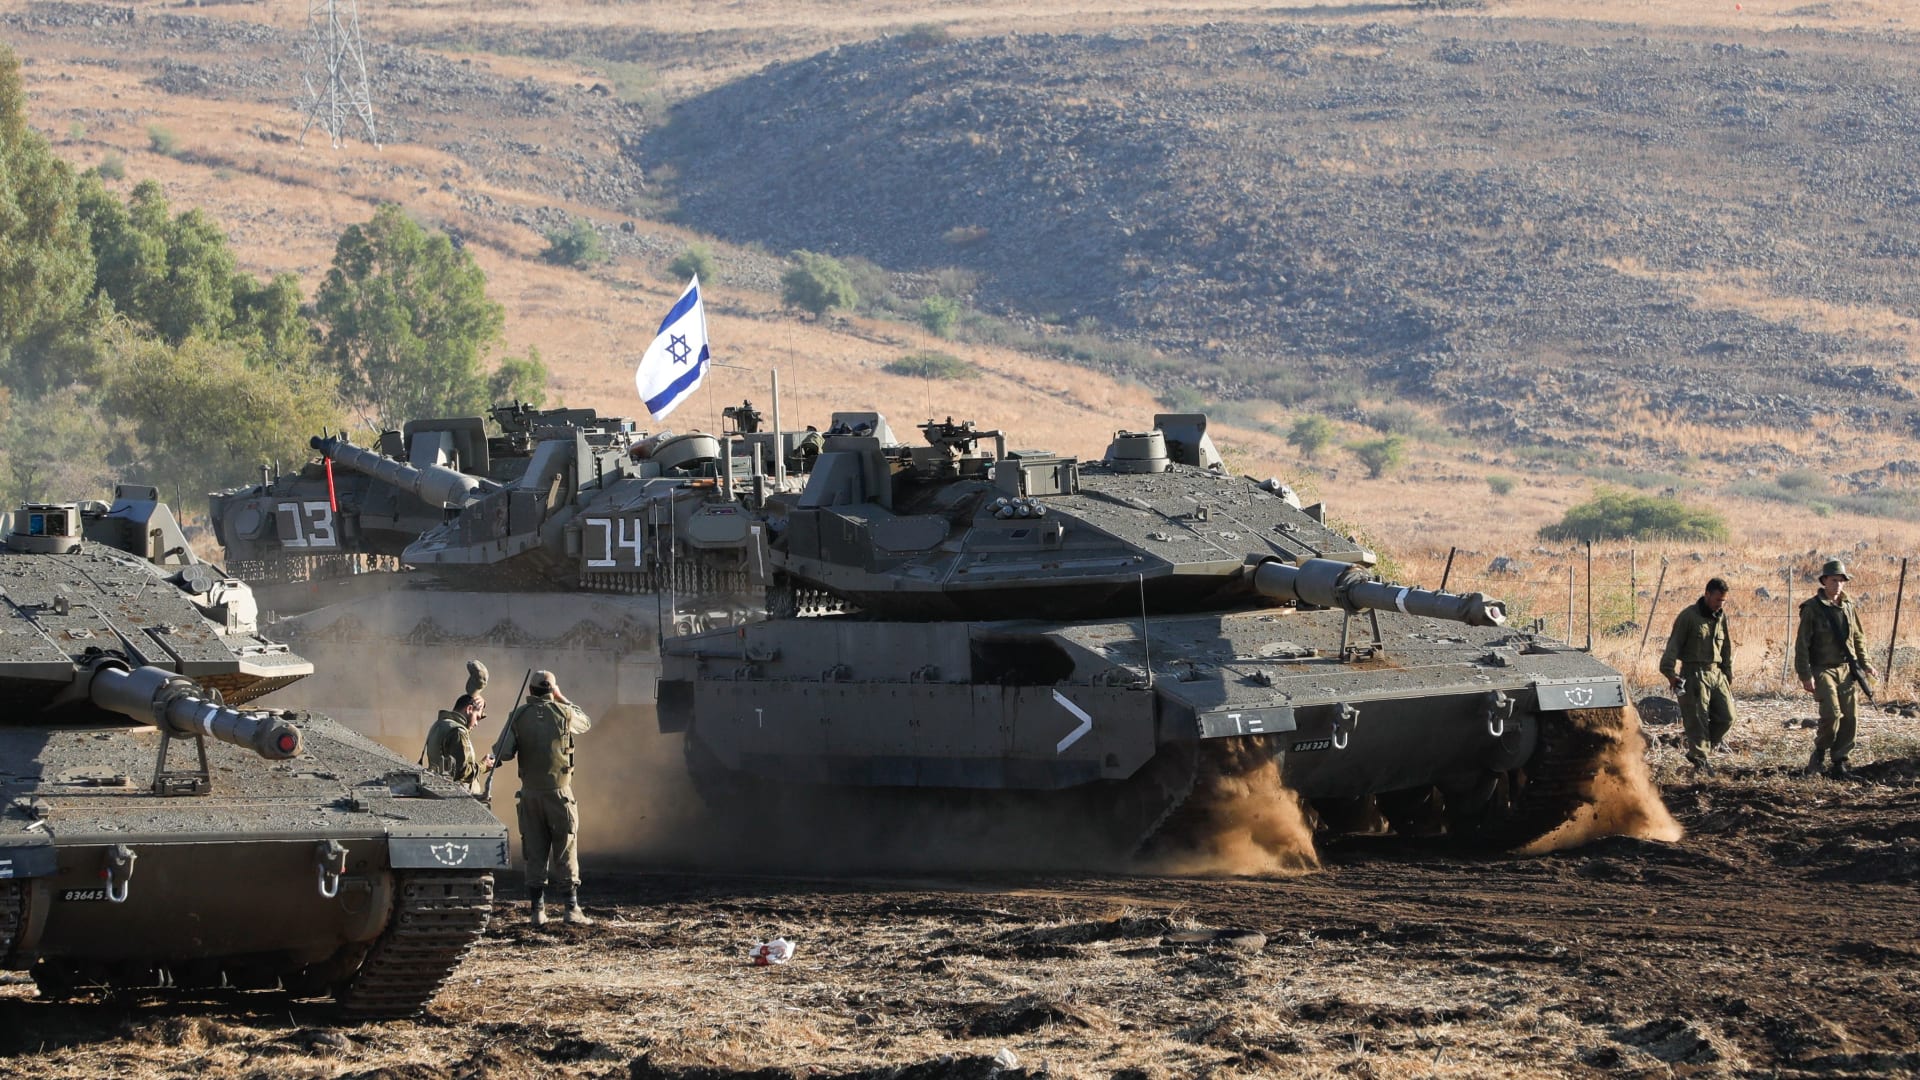 غوتيريش لـCNN : لبنان "لن ينجو" وسيُدمر "بالكامل" حال تصعيد المواجهة مع إسرائيل